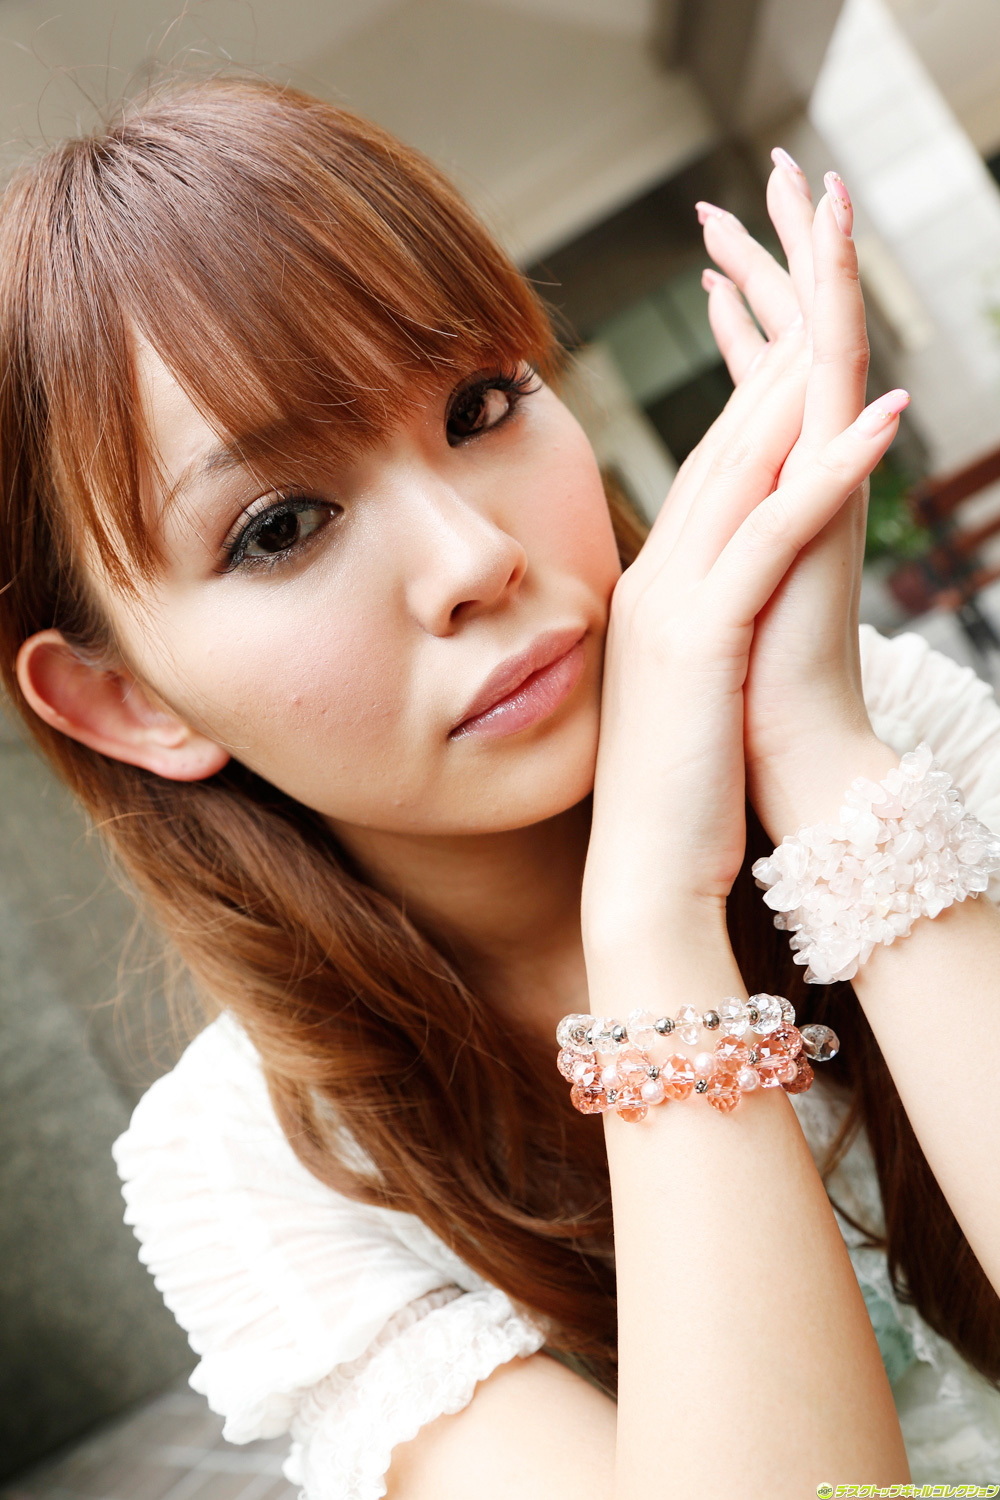 Japanese beauty beautiful woman